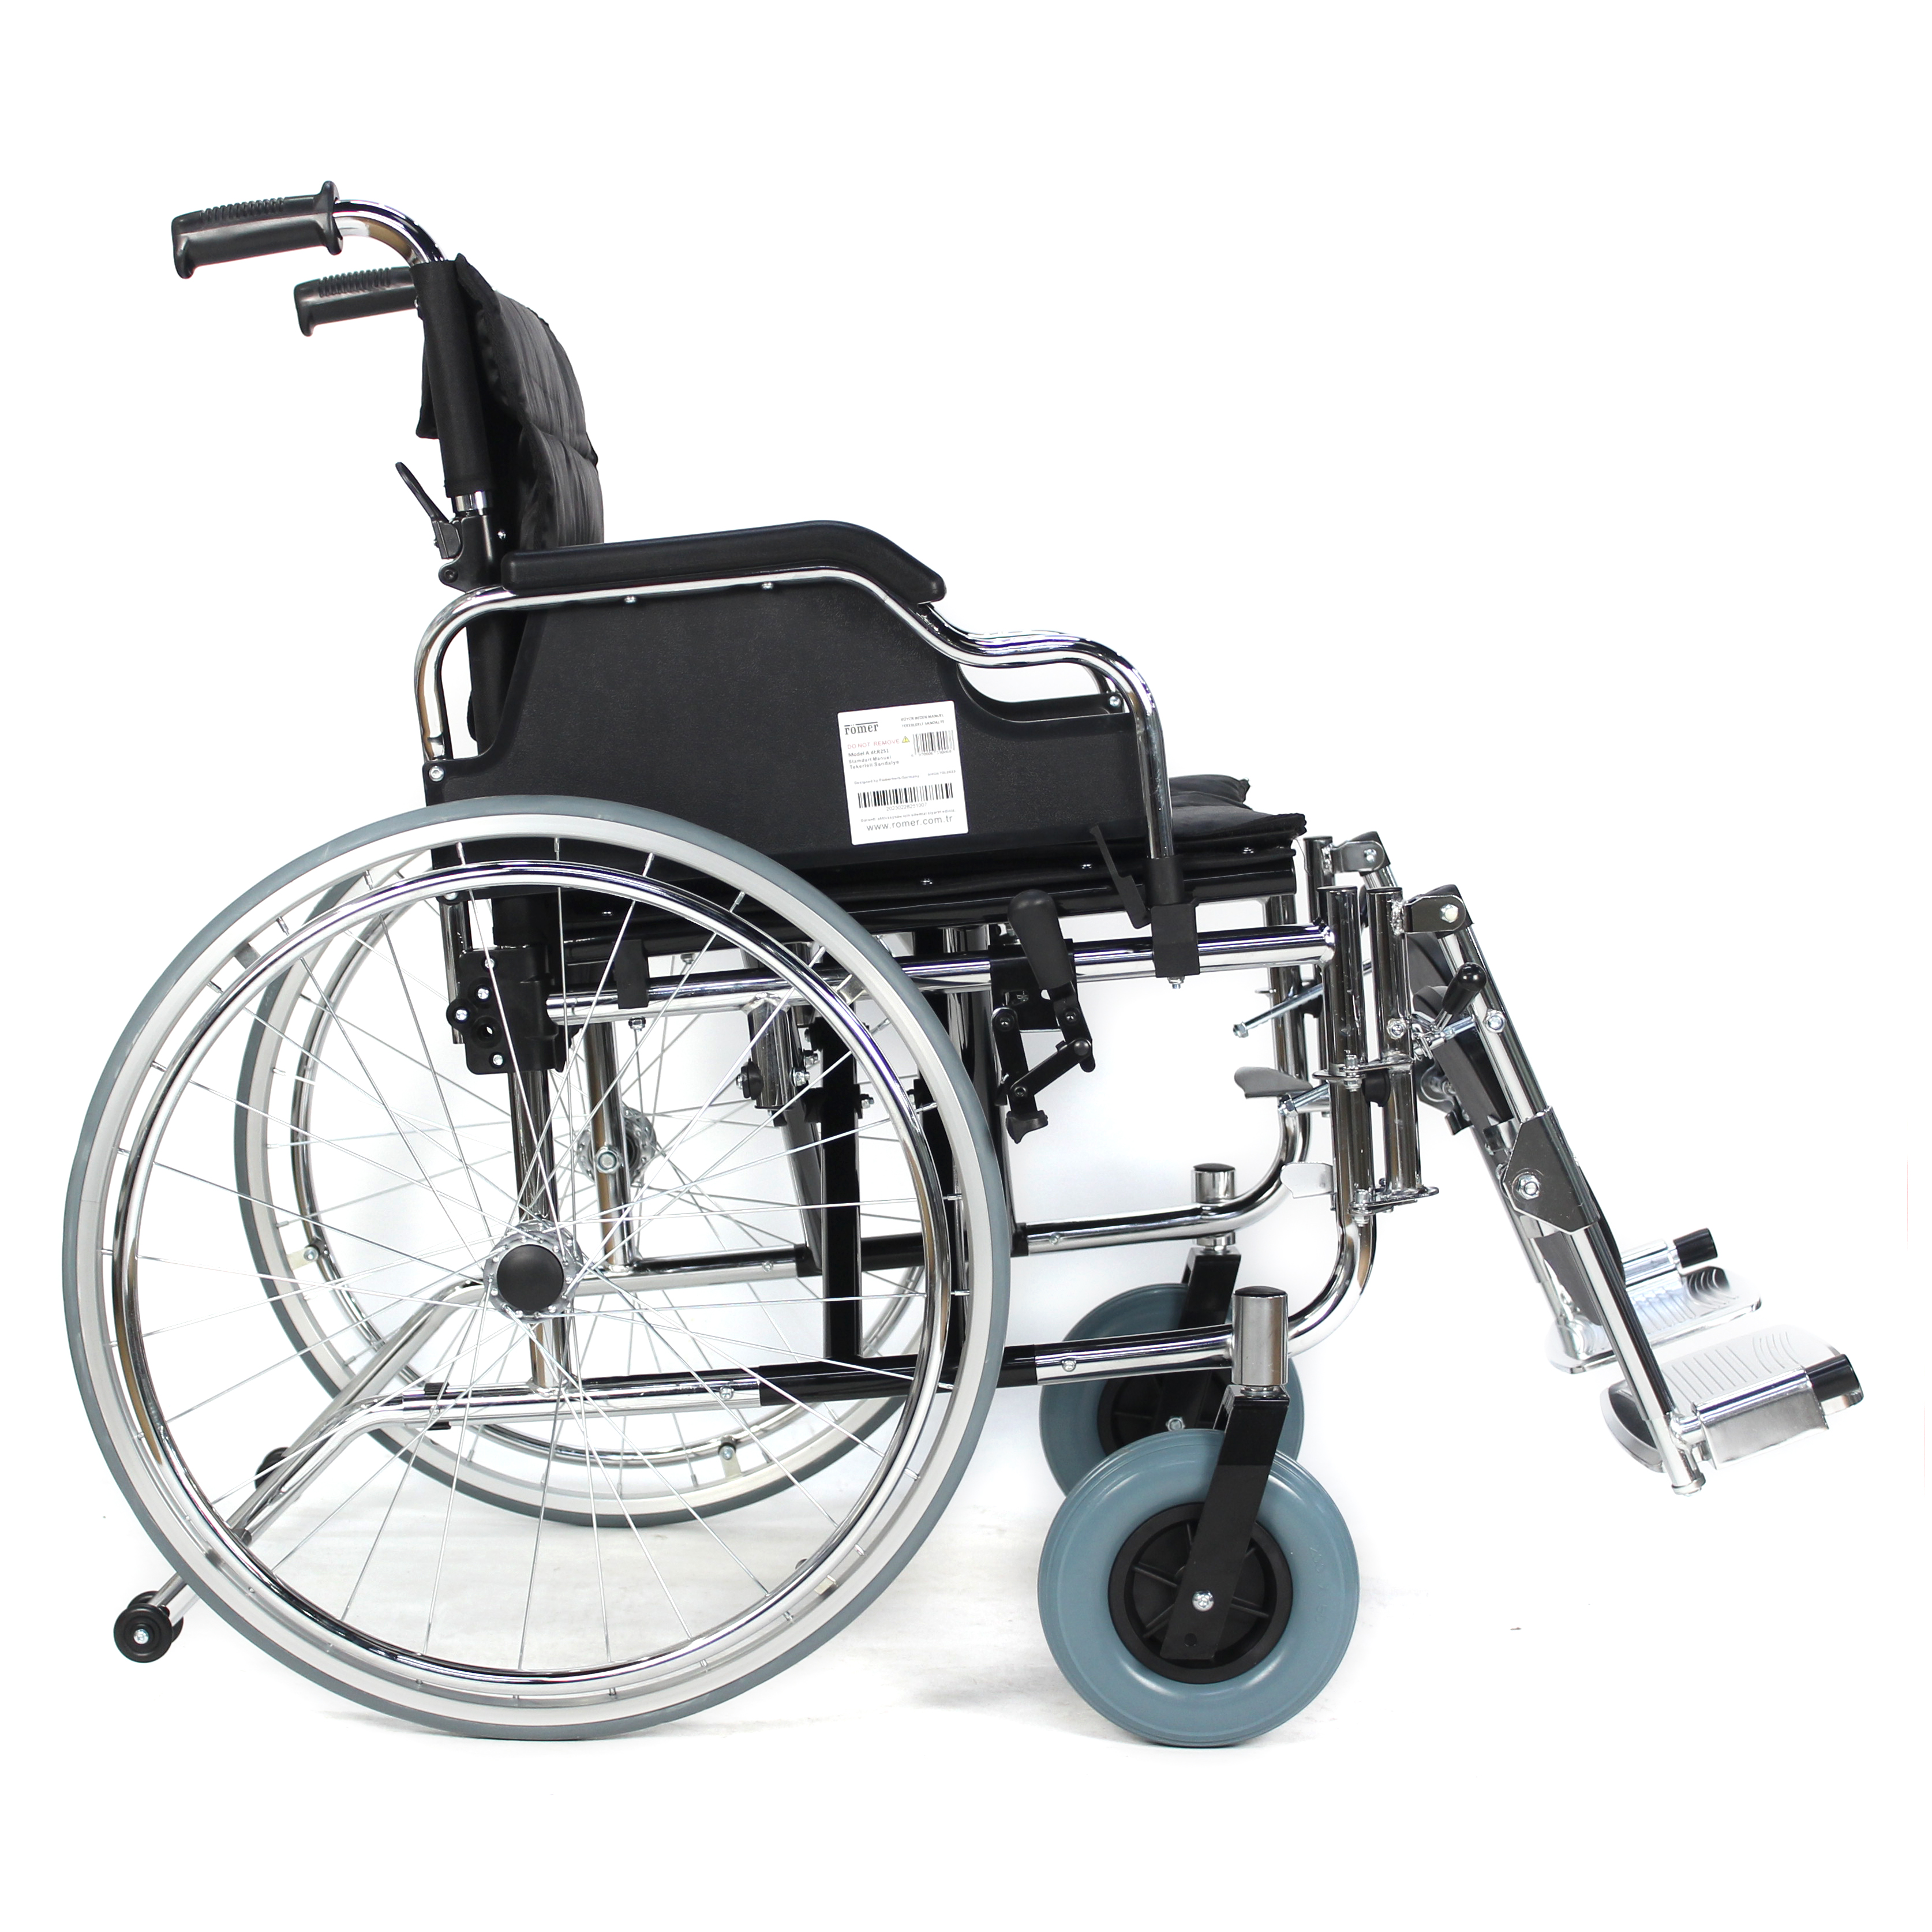 Comprar Equipo de rehabilitación médica, silla de ruedas de acero de nuevo diseño de alta calidad, silla de ruedas hecha a medida, Equipo de rehabilitación médica, silla de ruedas de acero de nuevo diseño de alta calidad, silla de ruedas hecha a medida Precios, Equipo de rehabilitación médica, silla de ruedas de acero de nuevo diseño de alta calidad, silla de ruedas hecha a medida Marcas, Equipo de rehabilitación médica, silla de ruedas de acero de nuevo diseño de alta calidad, silla de ruedas hecha a medida Fabricante, Equipo de rehabilitación médica, silla de ruedas de acero de nuevo diseño de alta calidad, silla de ruedas hecha a medida Citas, Equipo de rehabilitación médica, silla de ruedas de acero de nuevo diseño de alta calidad, silla de ruedas hecha a medida Empresa.